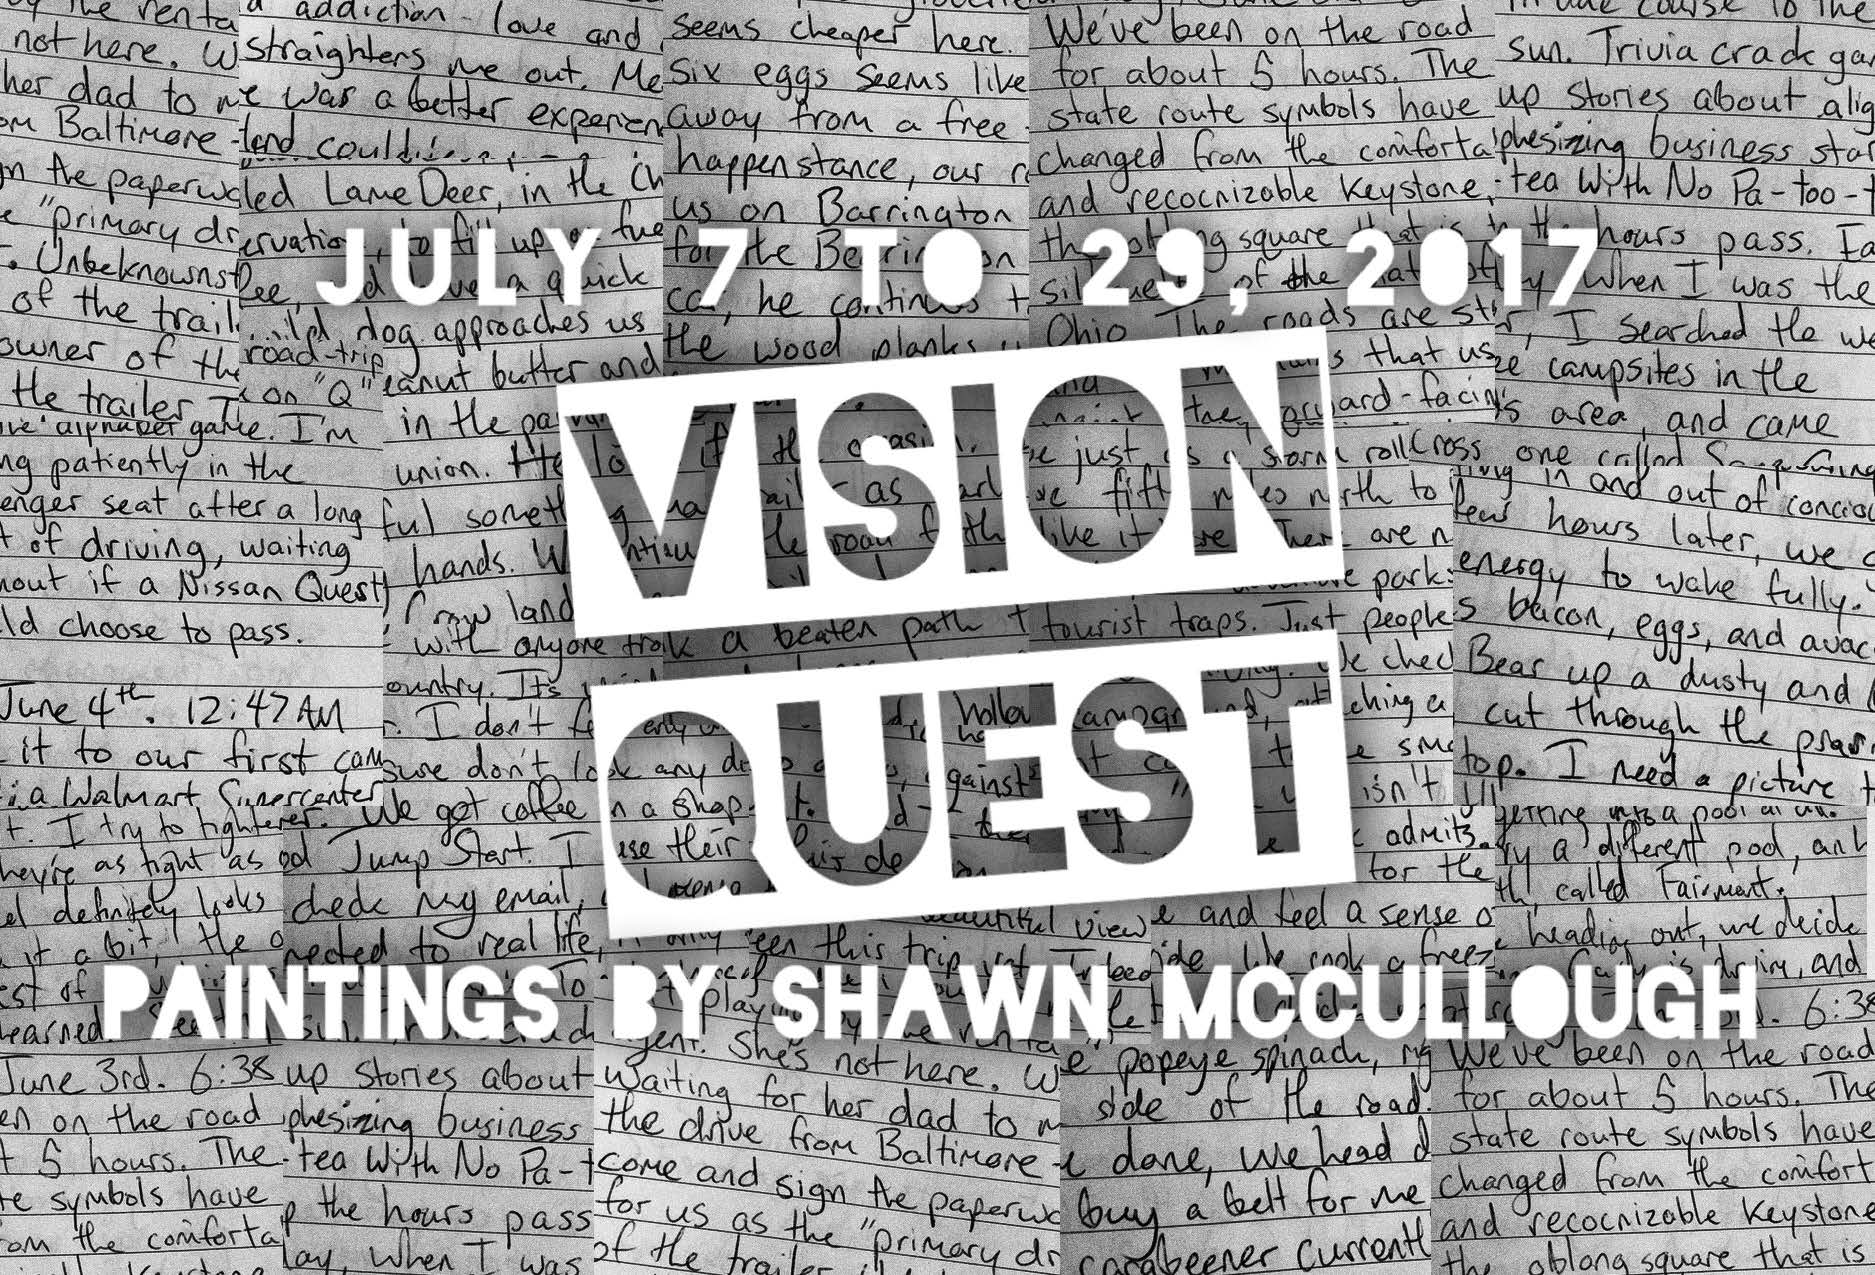 Vision Quest Exhibit @ The Art Space